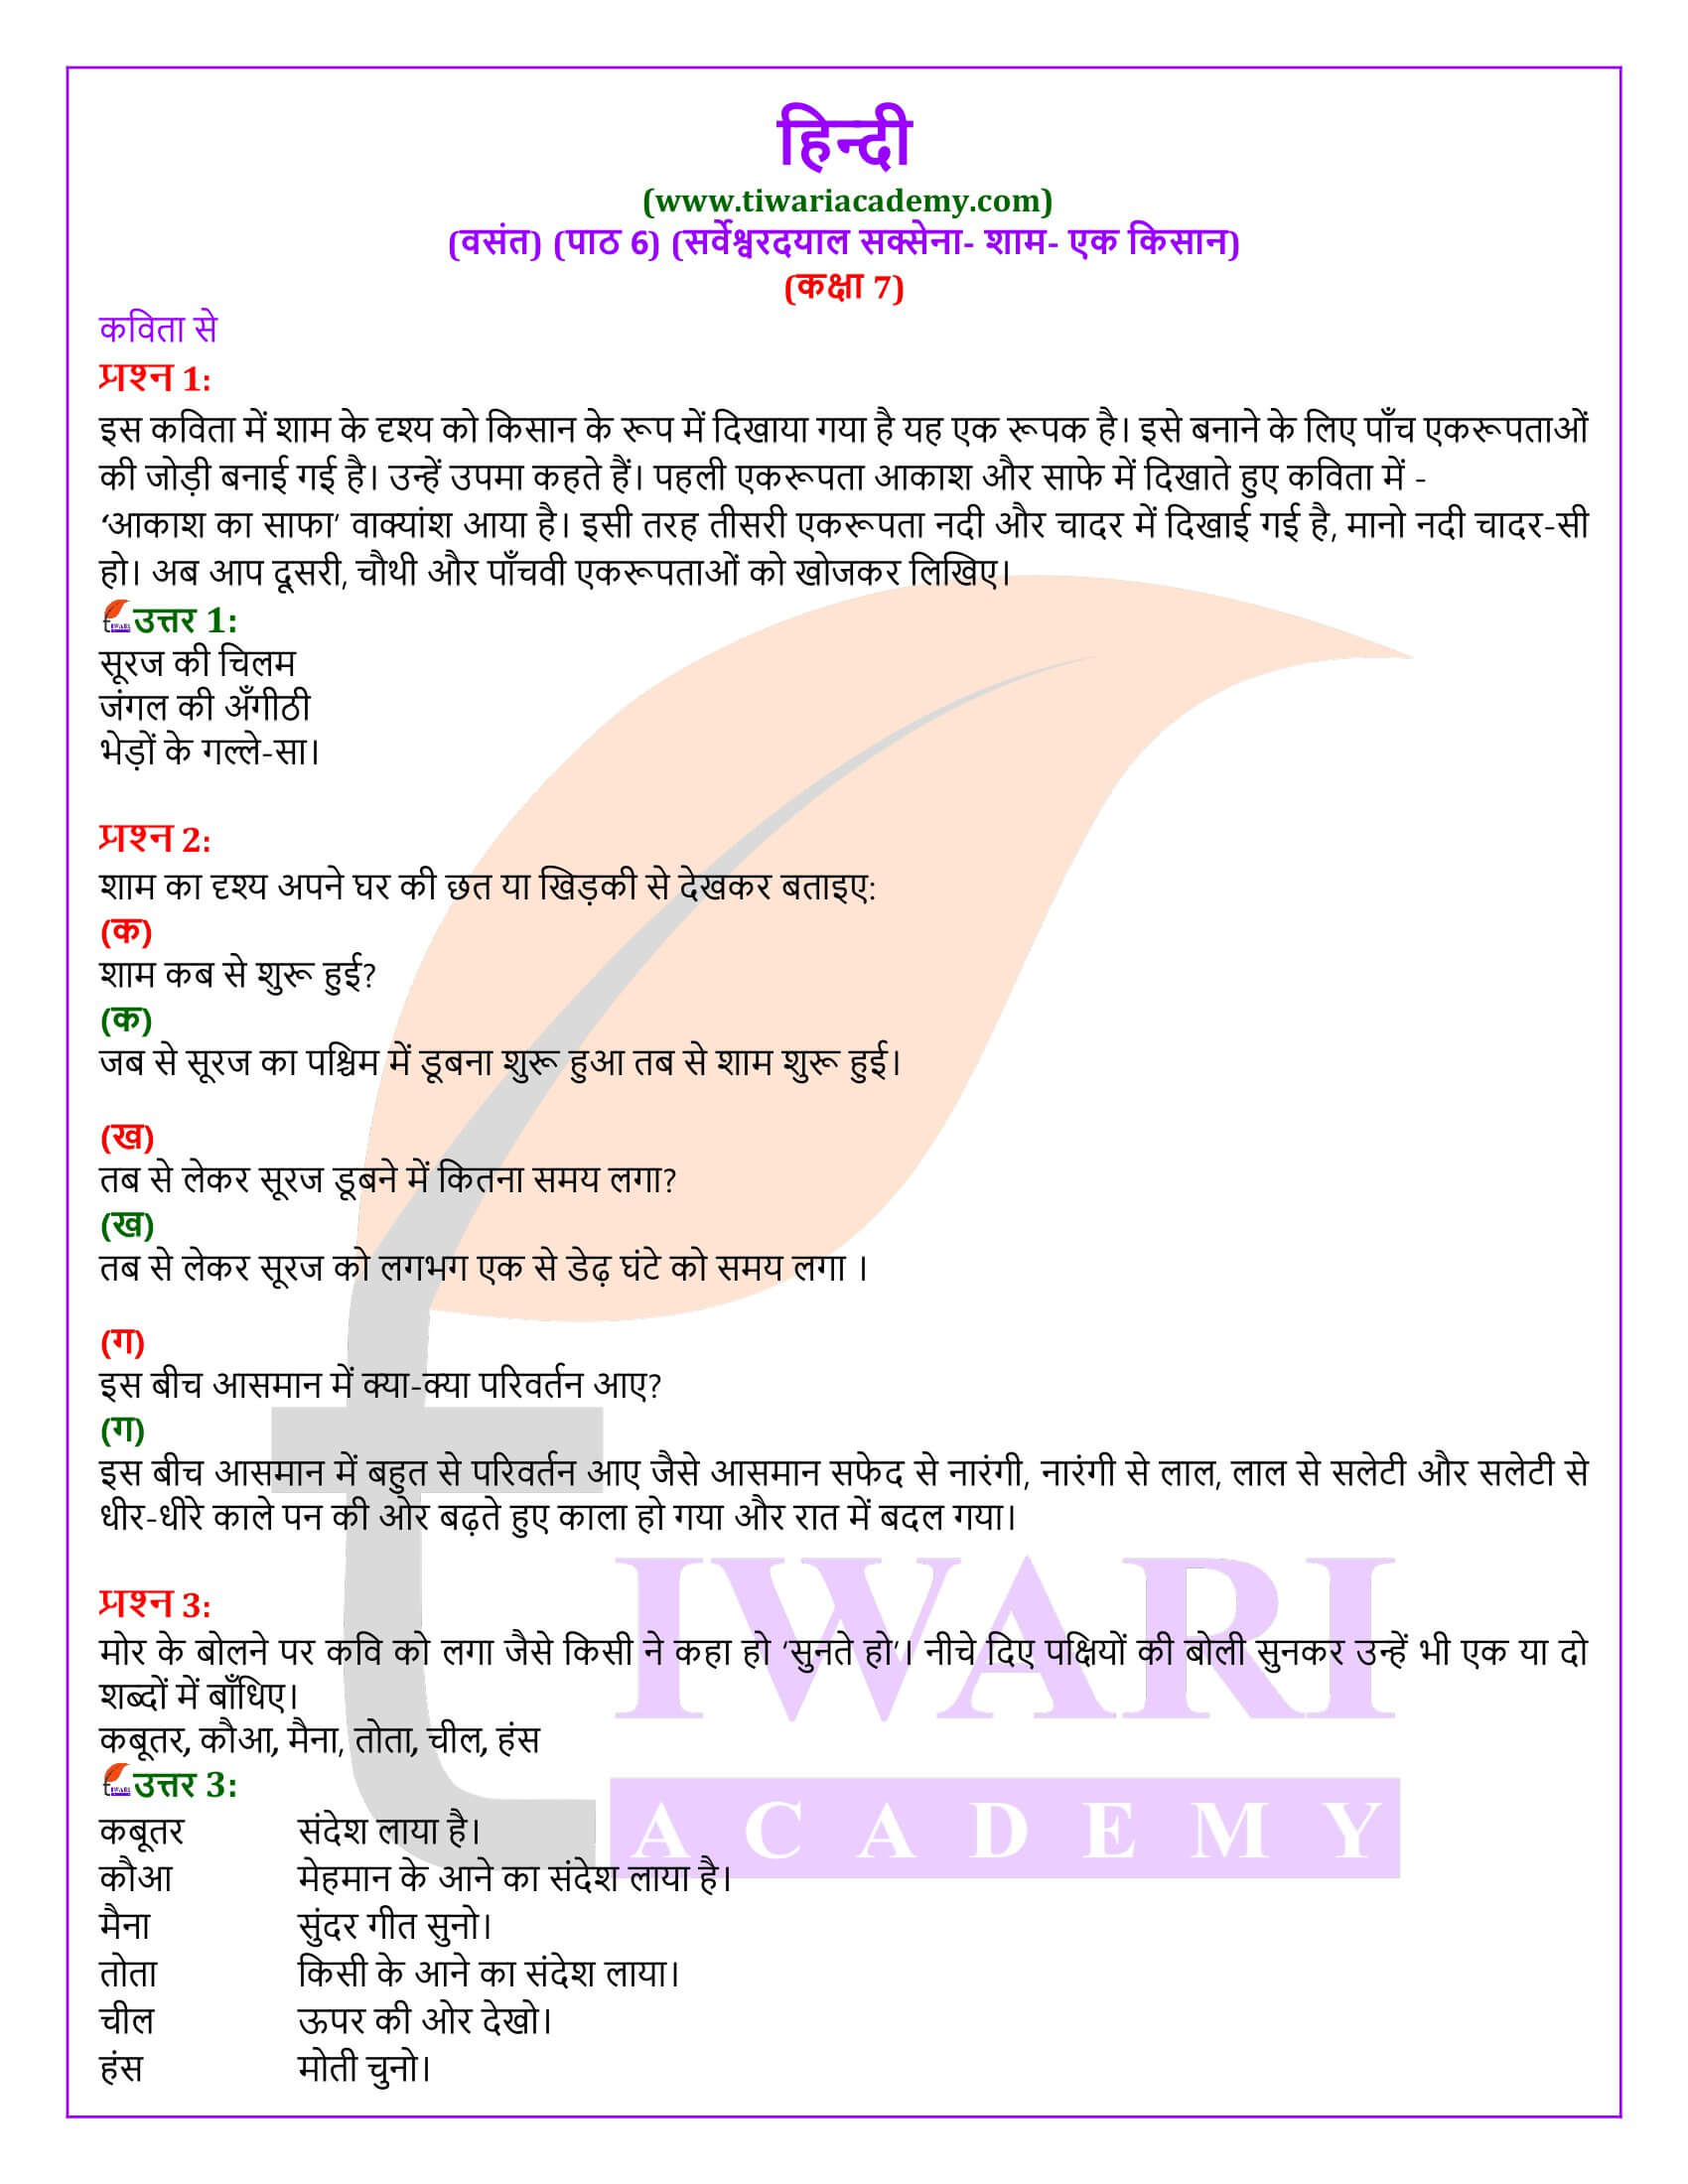 कक्षा 7 हिंदी वसंत अध्याय 6 शाम-एक किसान के प्रश्न उत्तर